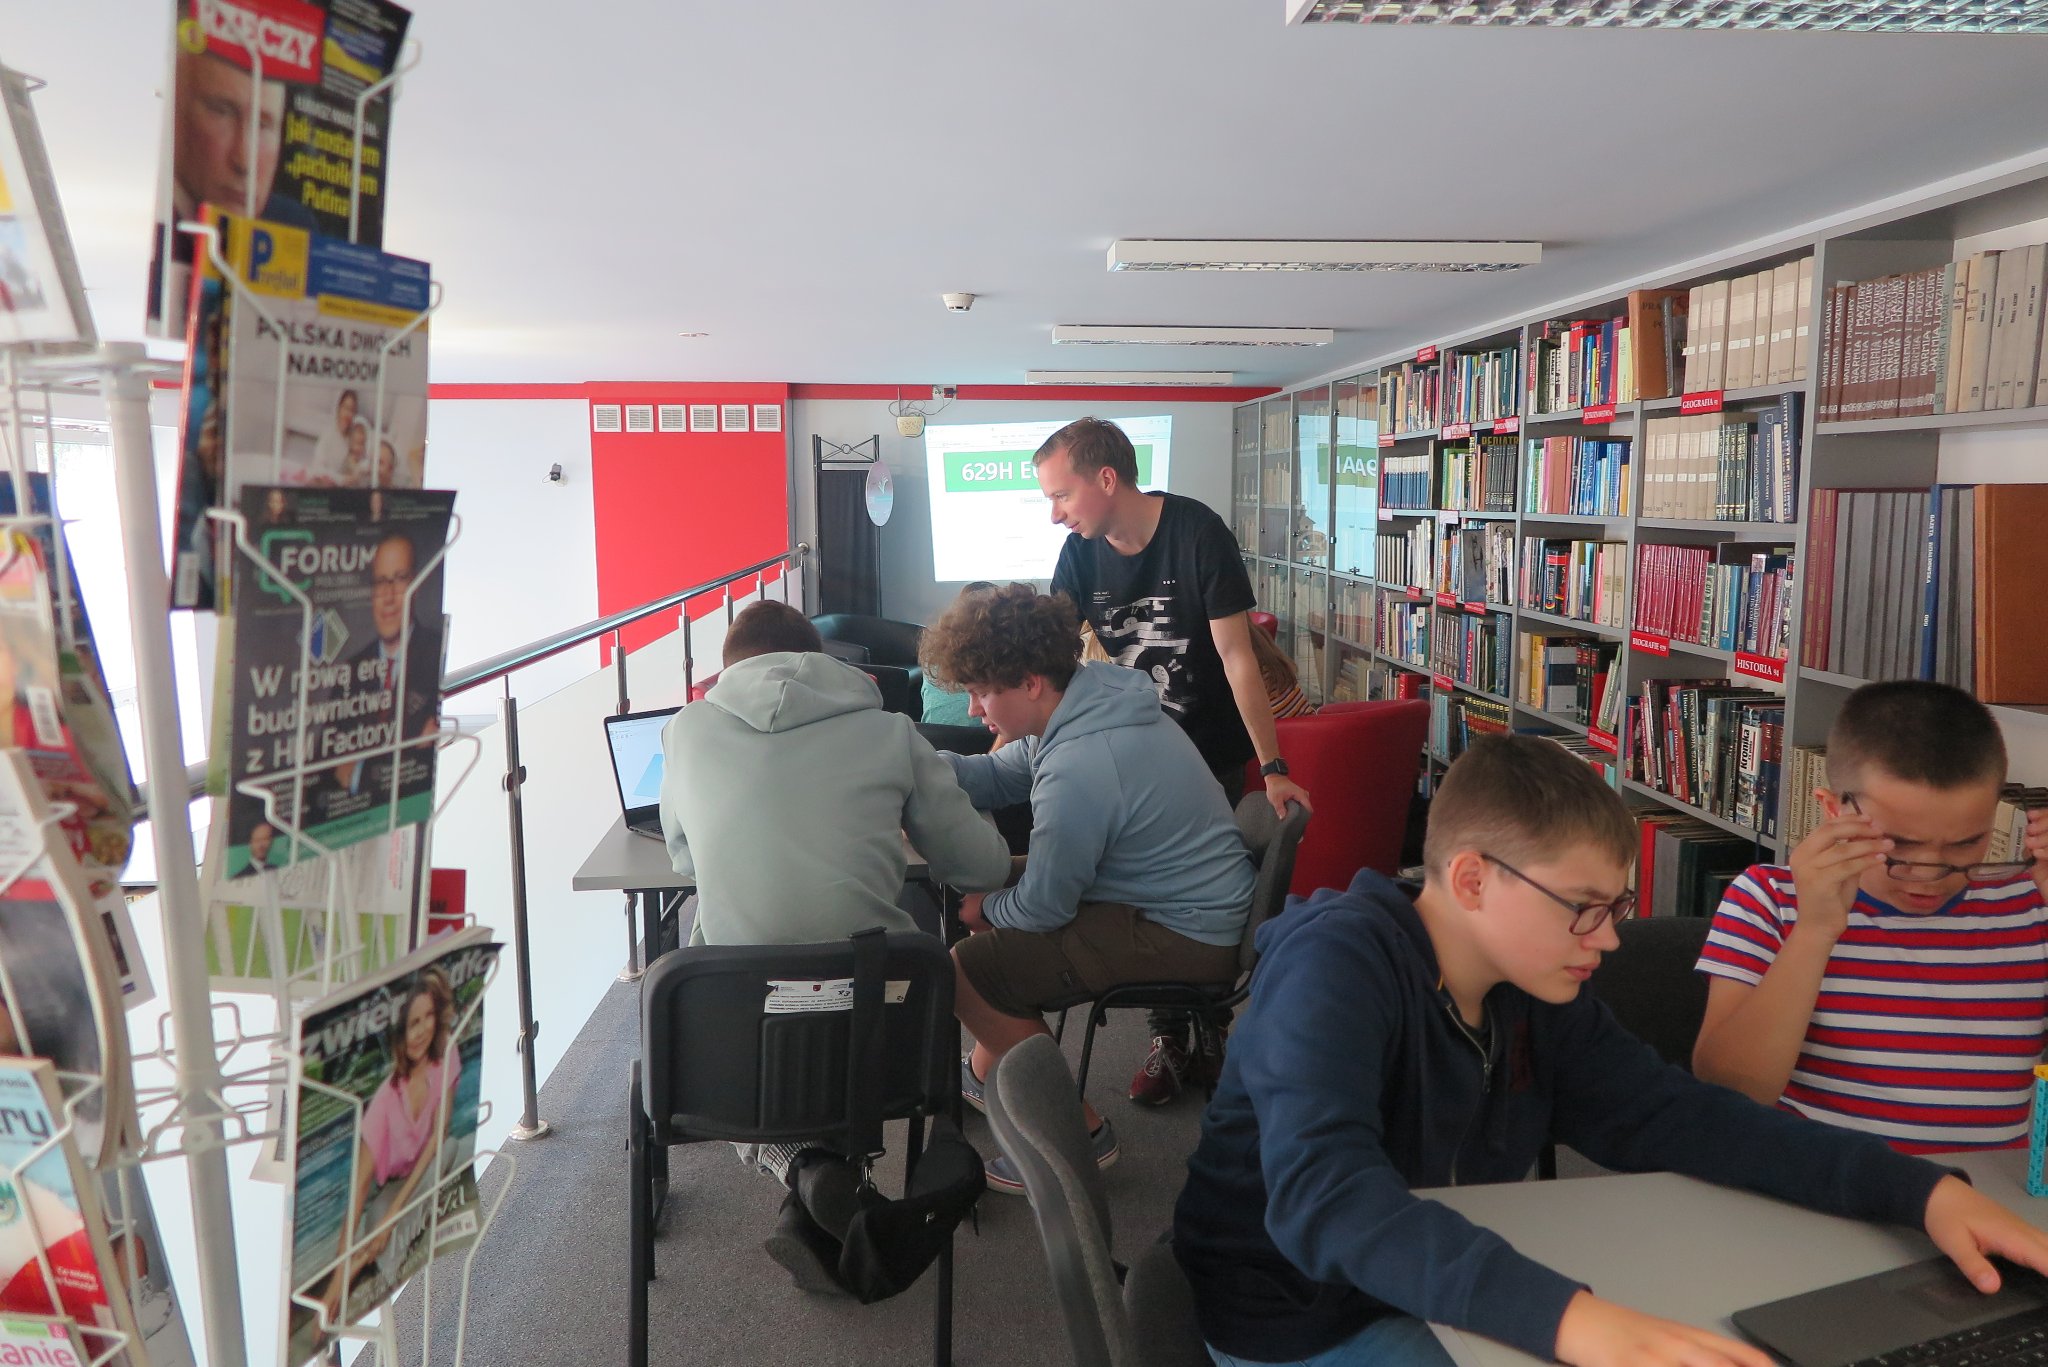 antresola biblioteki, trener i uczestnicy warsztatów siedzą przy stolikach  z na których leżą laptopy, w tle baner Klub Młodego Programisty, na ścianie wyświetlany jest obraz z rzutnika